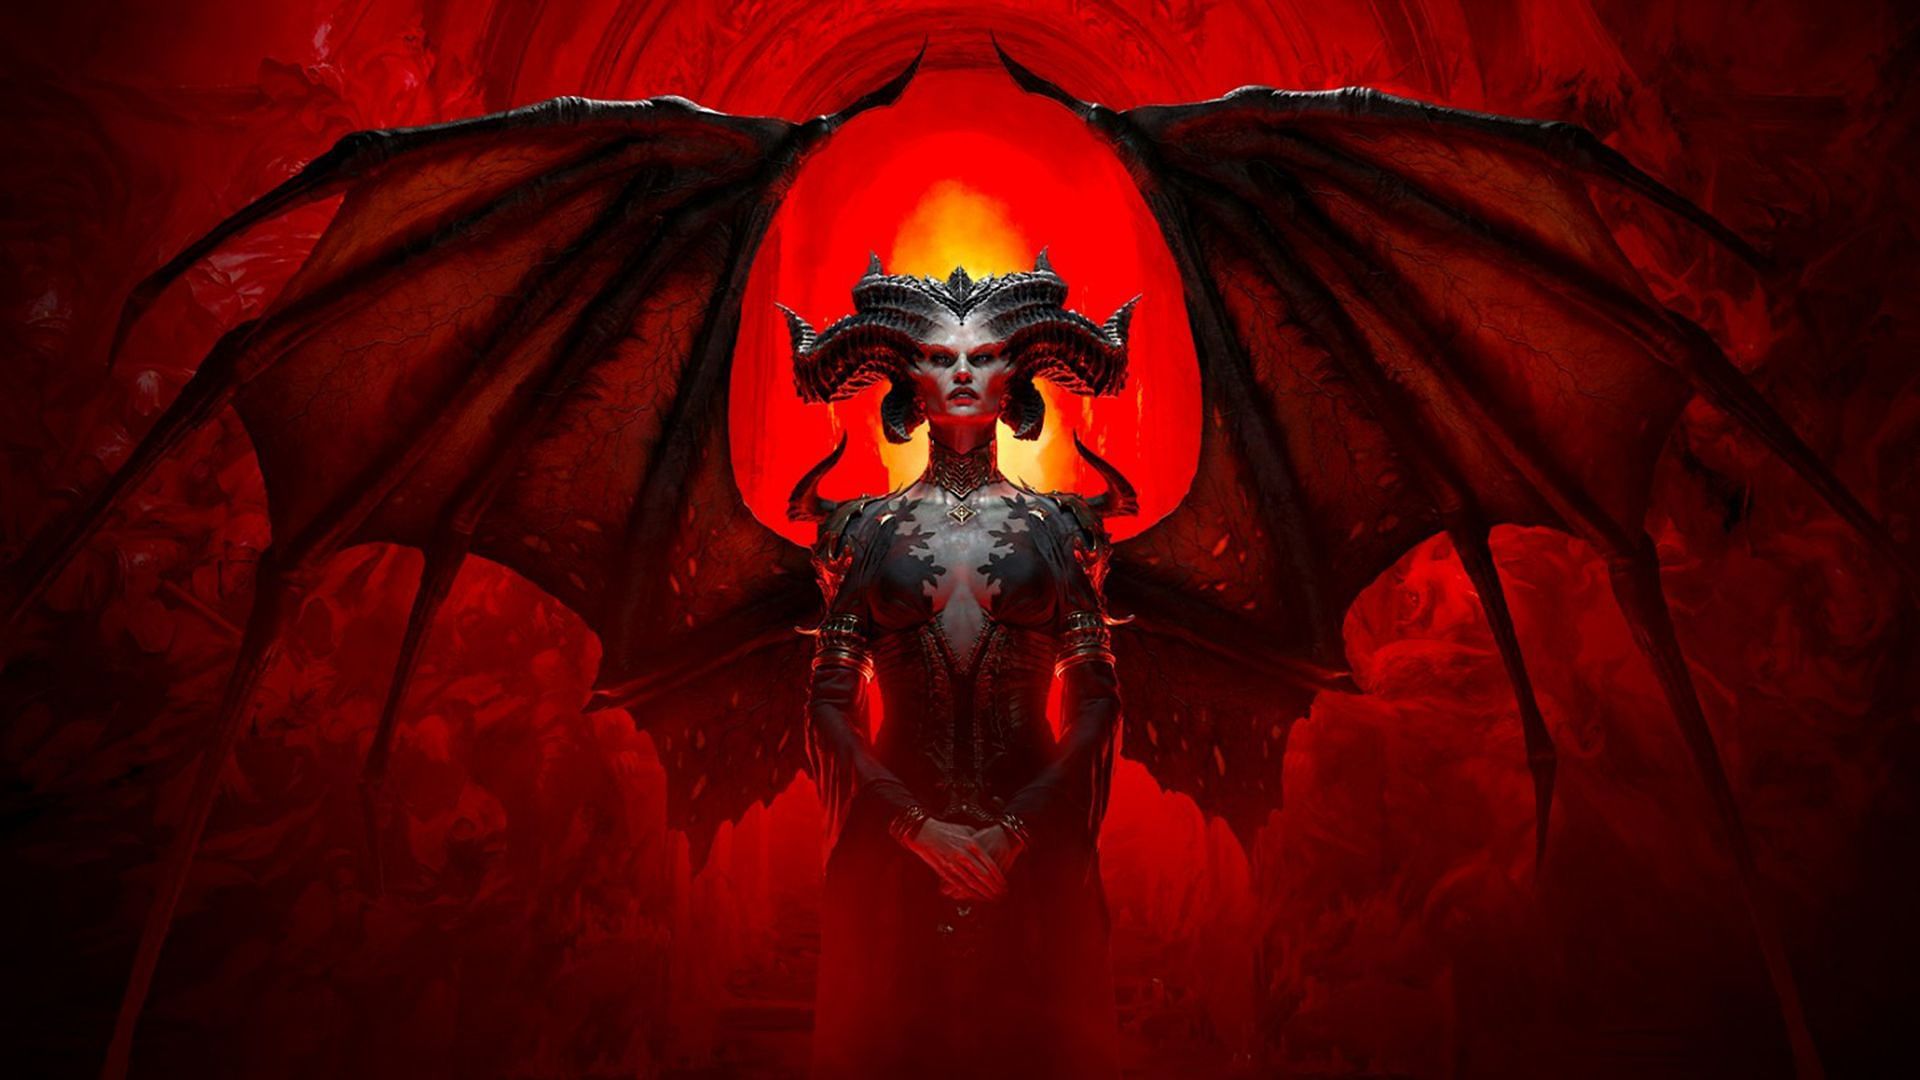 Diablo 4 battle pass